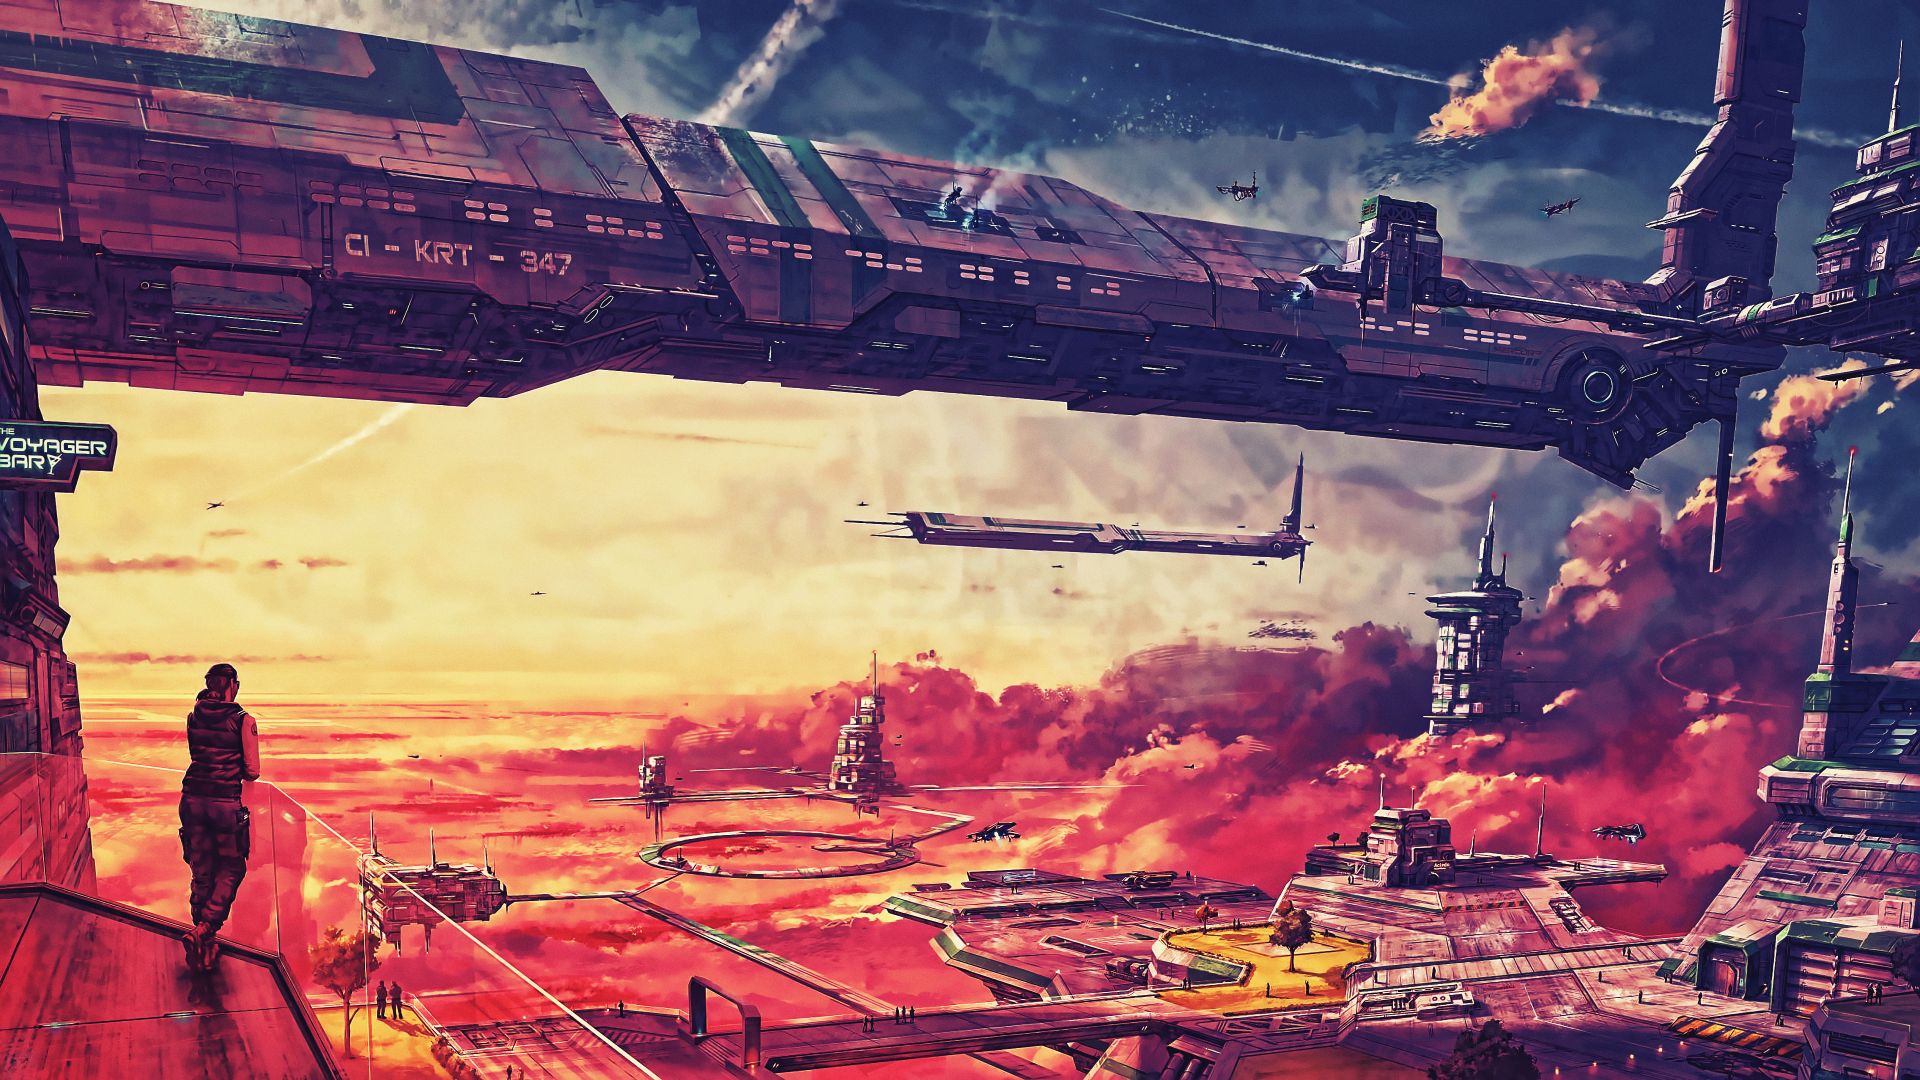 город будущего, космический корабль, futuristic, spaceship, future world, 4K (horizontal)